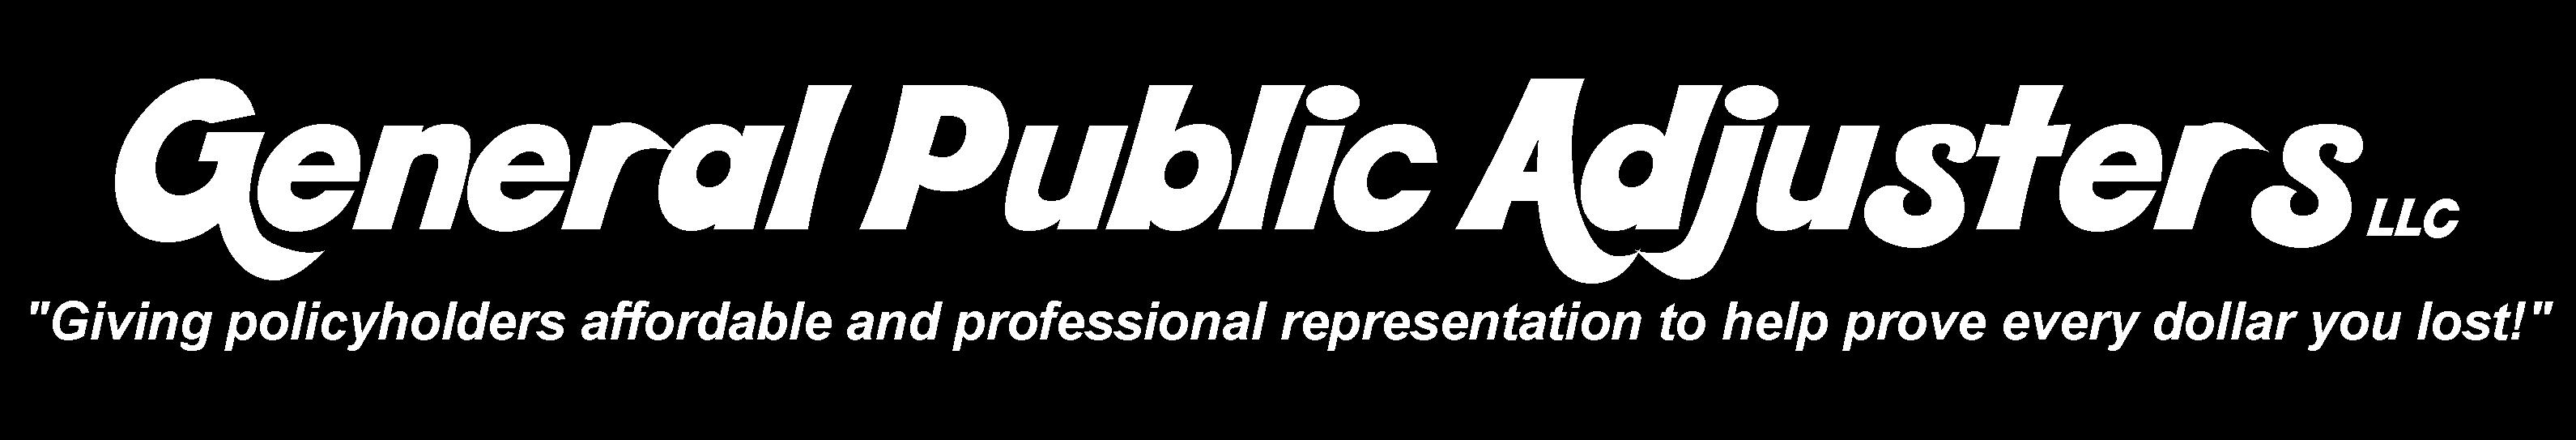 General Public Adjusters LLC Logo